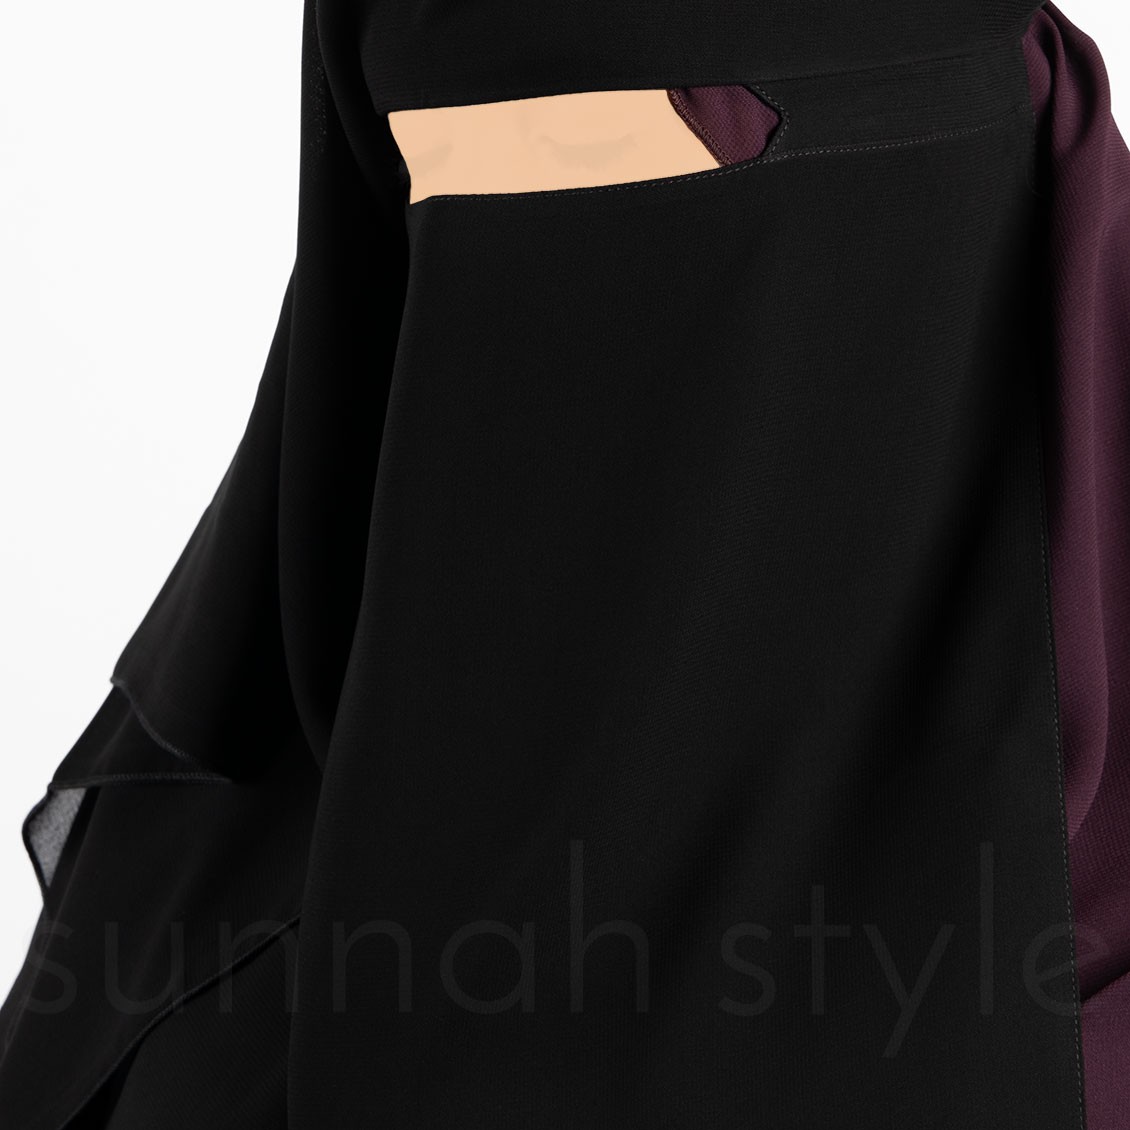 Sunnah Style Long No-Pinch Three Layer Niqab Black